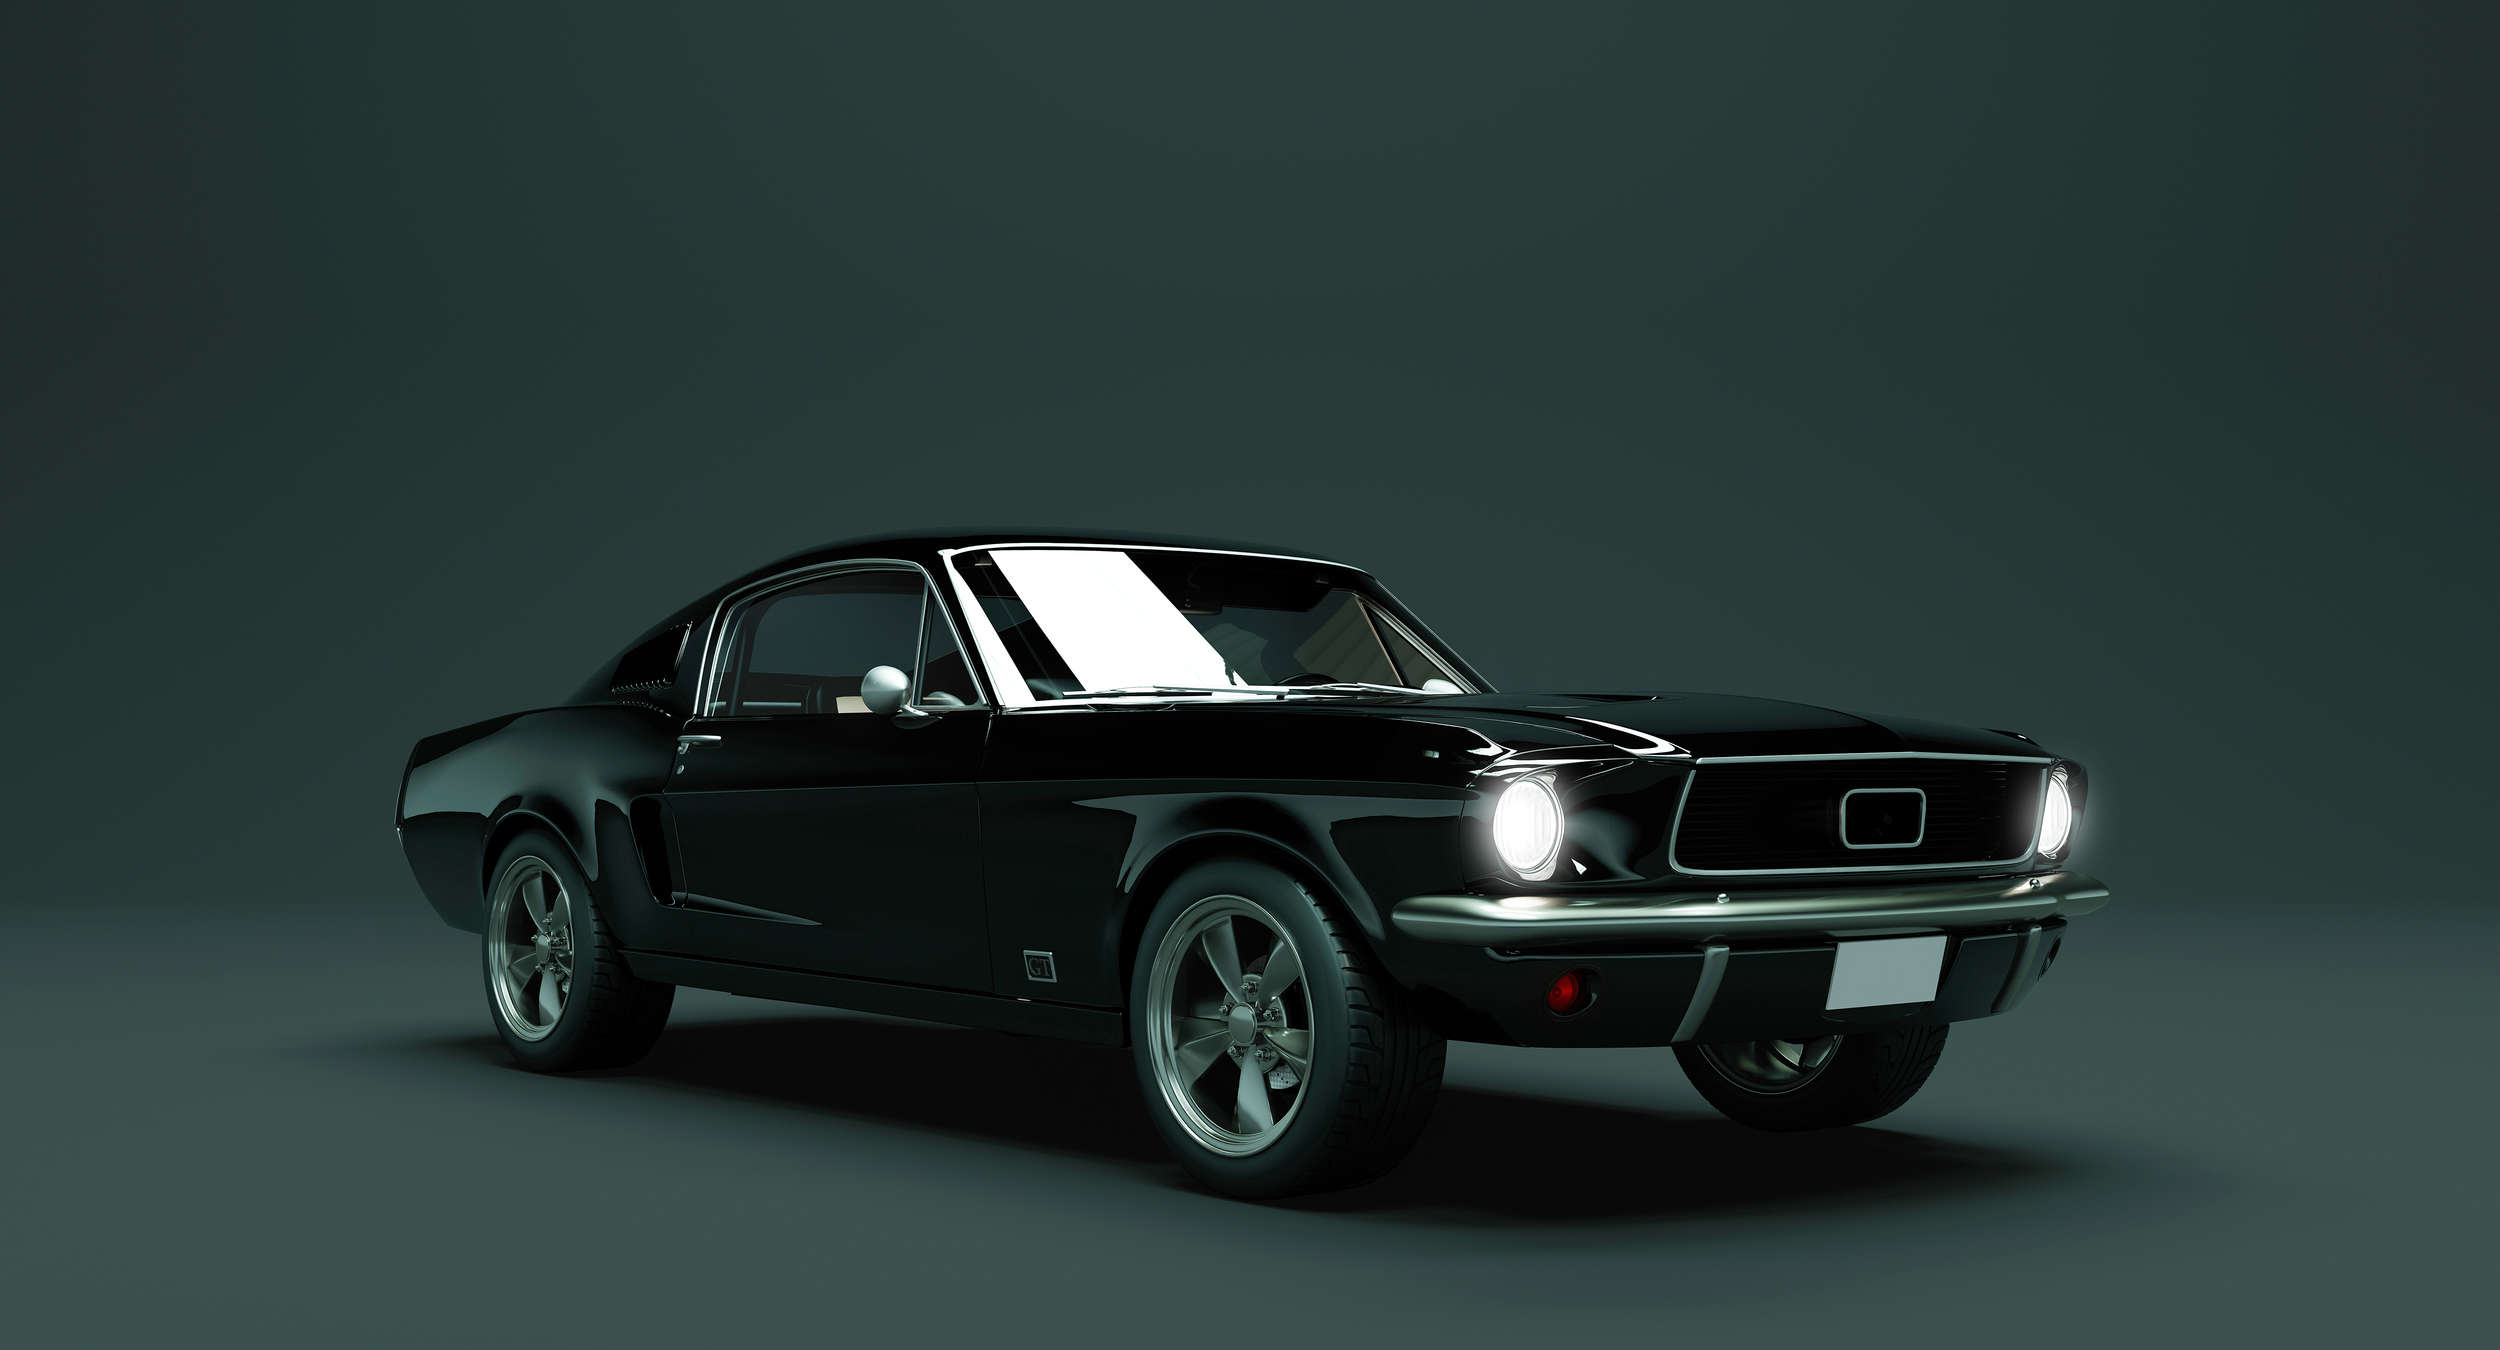             Mustang 2 - Fotomurali, auto d'epoca Mustang 1968 - Blu, nero | Materiali non tessuto testurizzato
        